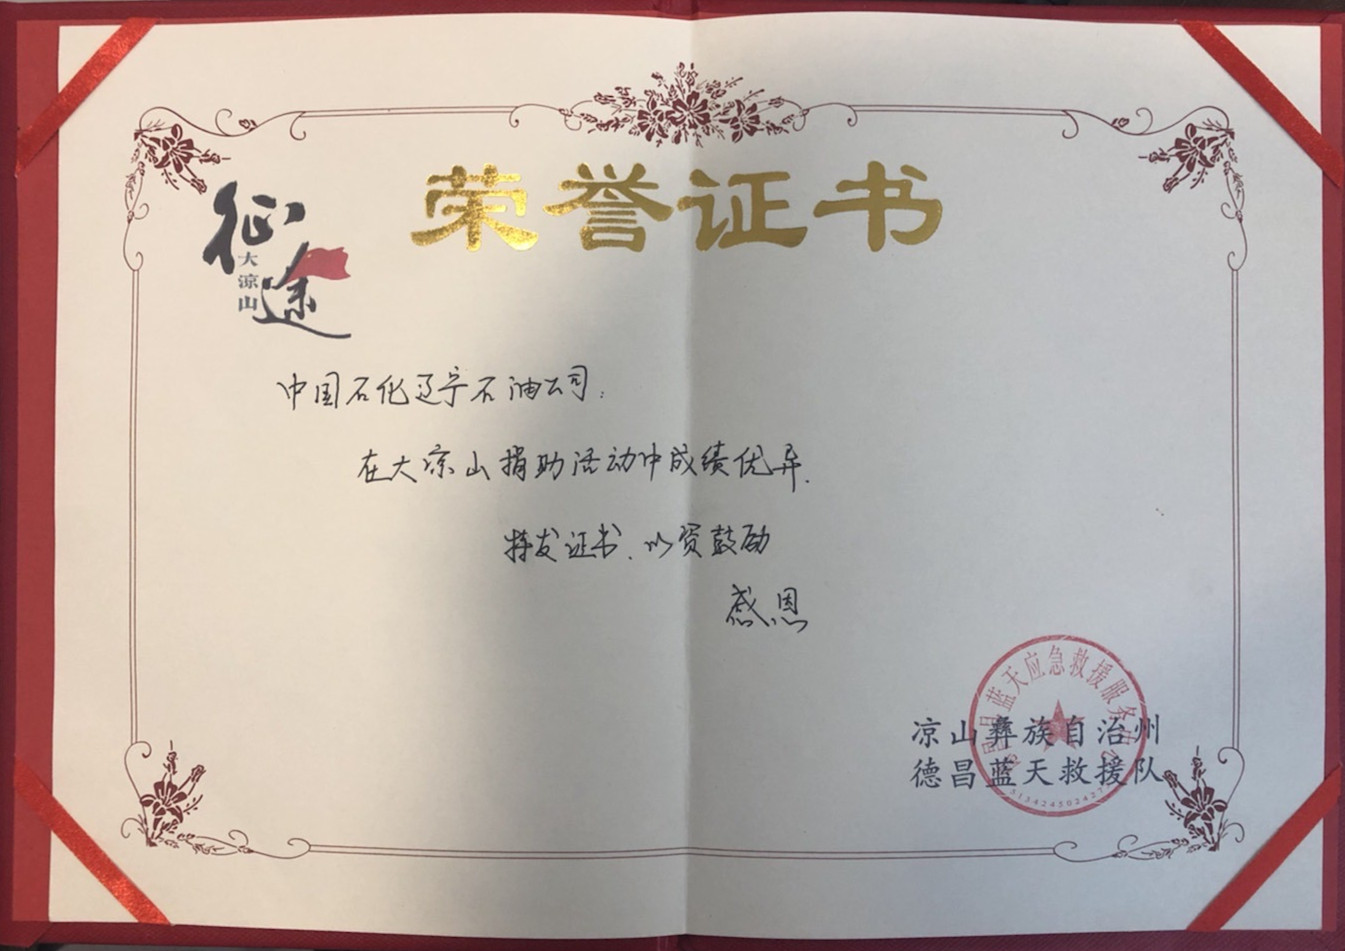 救援队授予的荣誉证书今后,辽河石油党支部将持续开展爱心公益活动